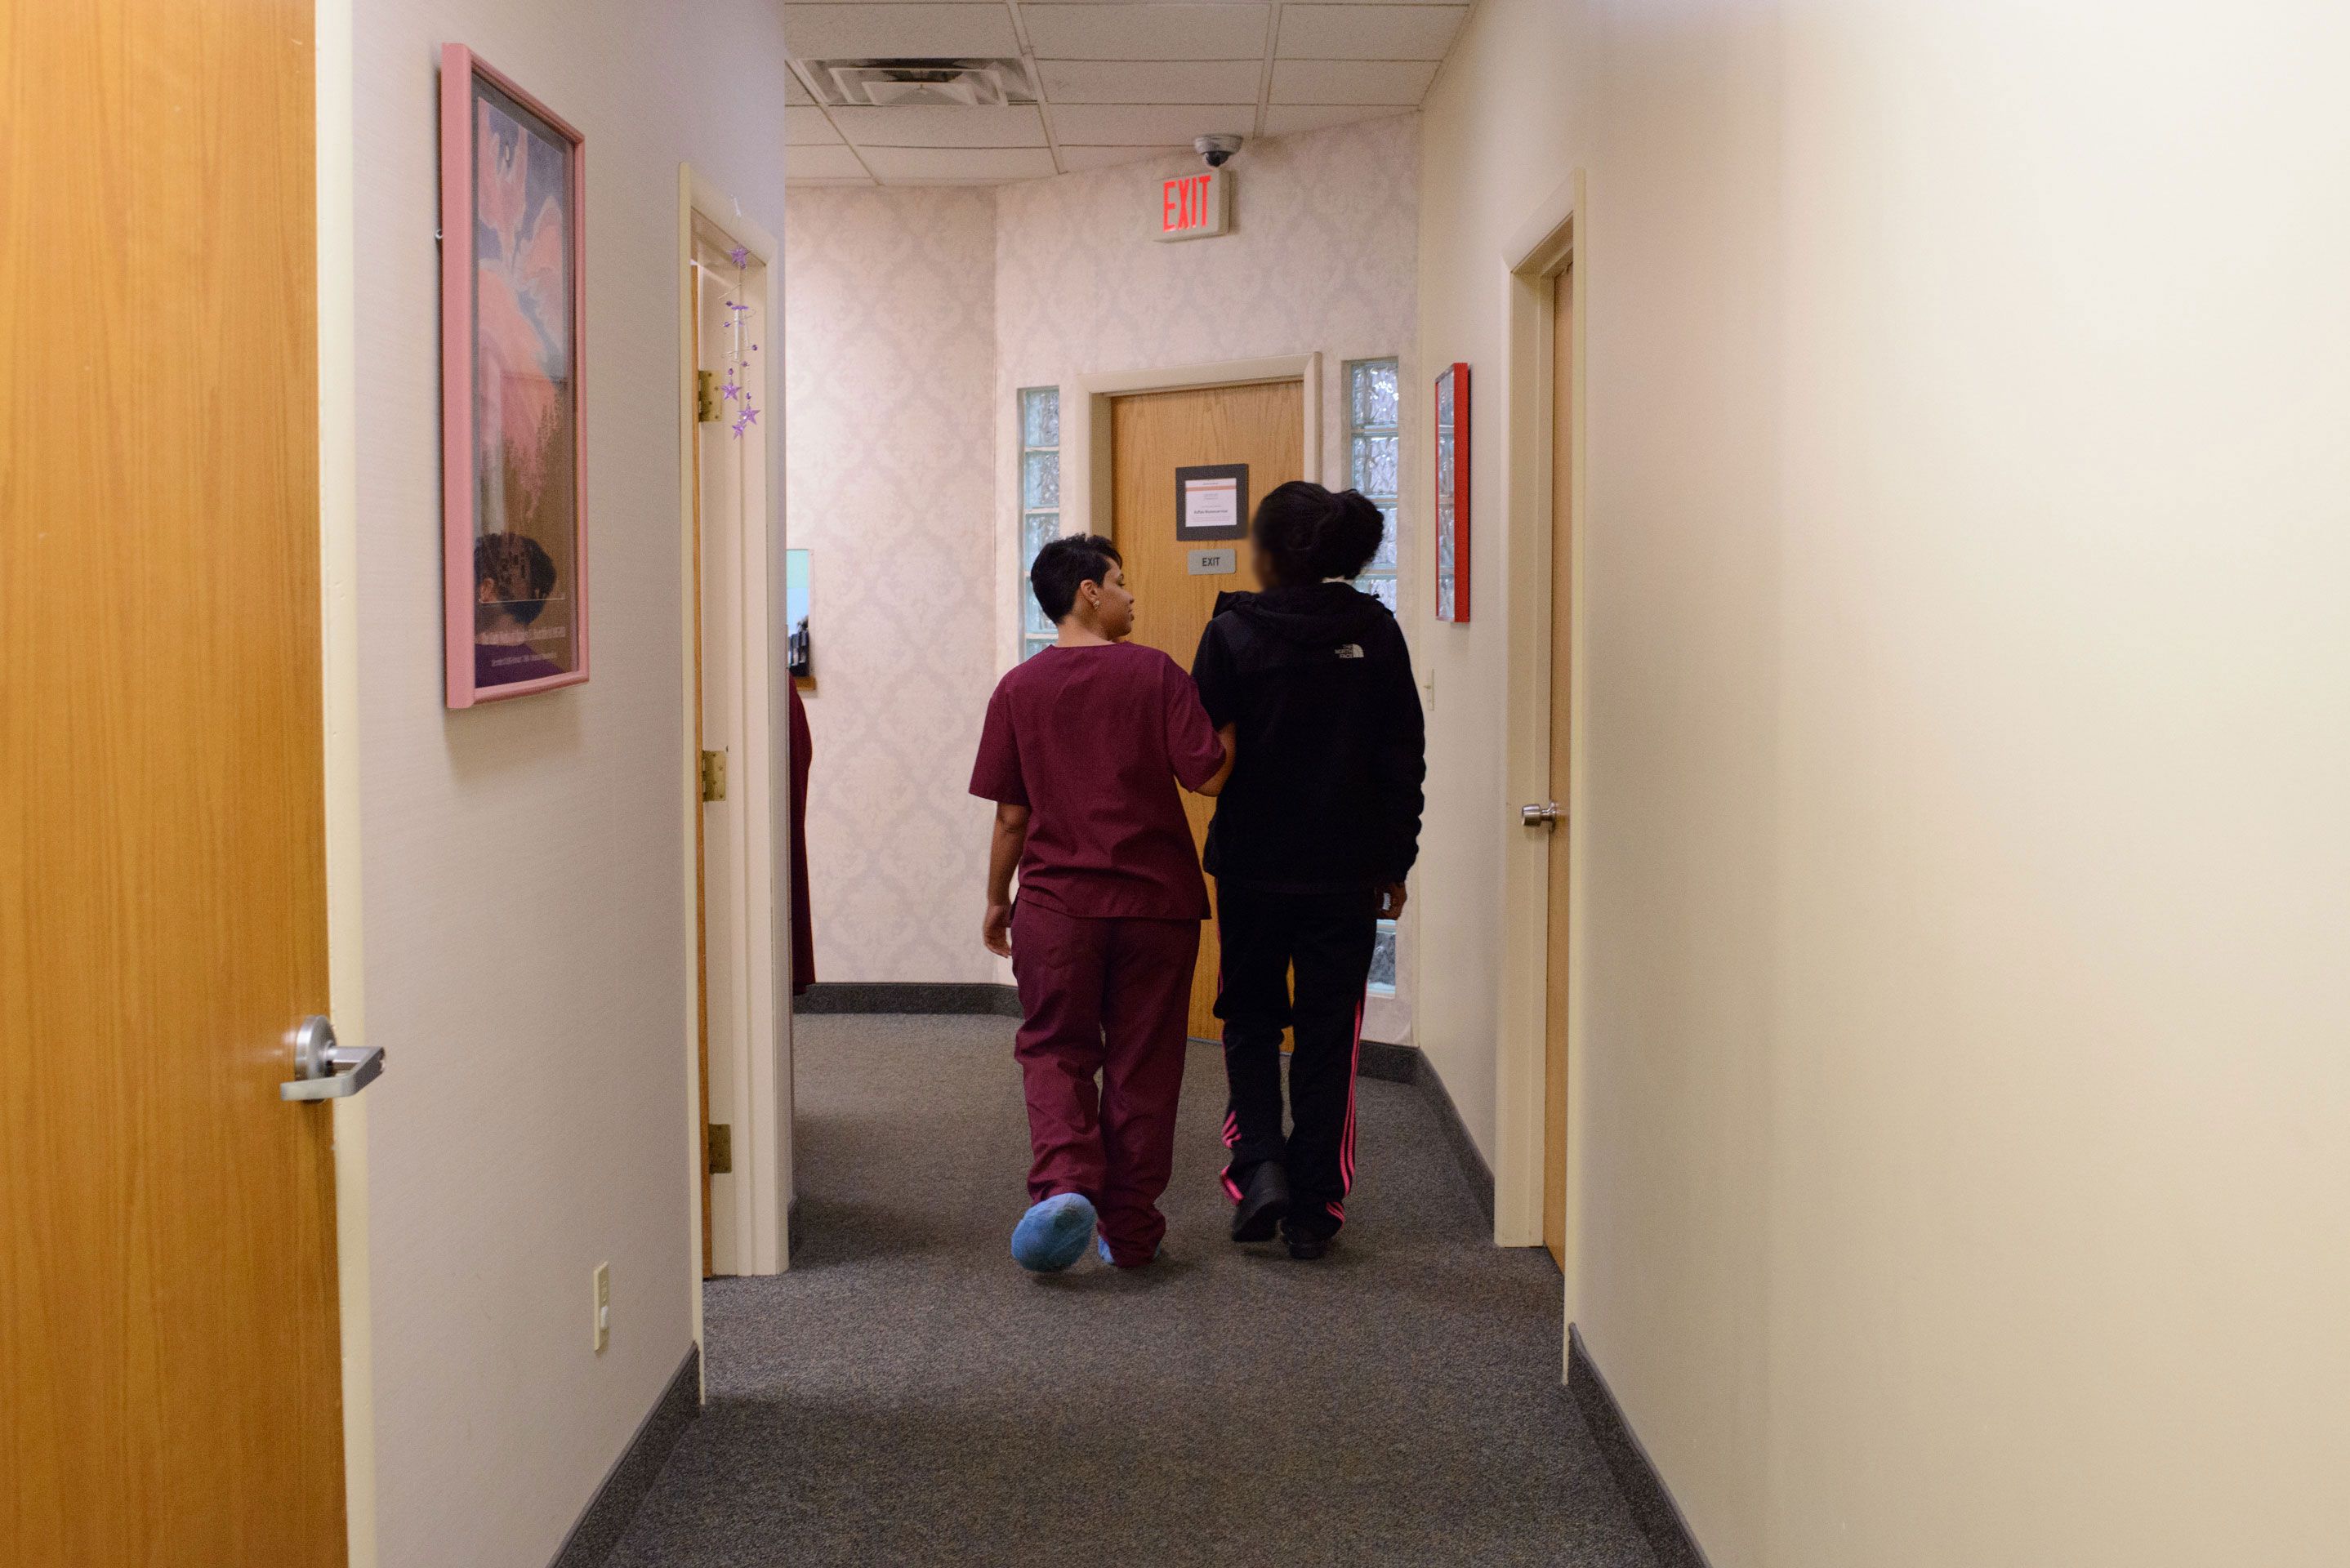 Pielęgniarka odprowadza pacjentkę kliniki po przeprowadzonej aborcji korytarzem trzymając się pod rękę.